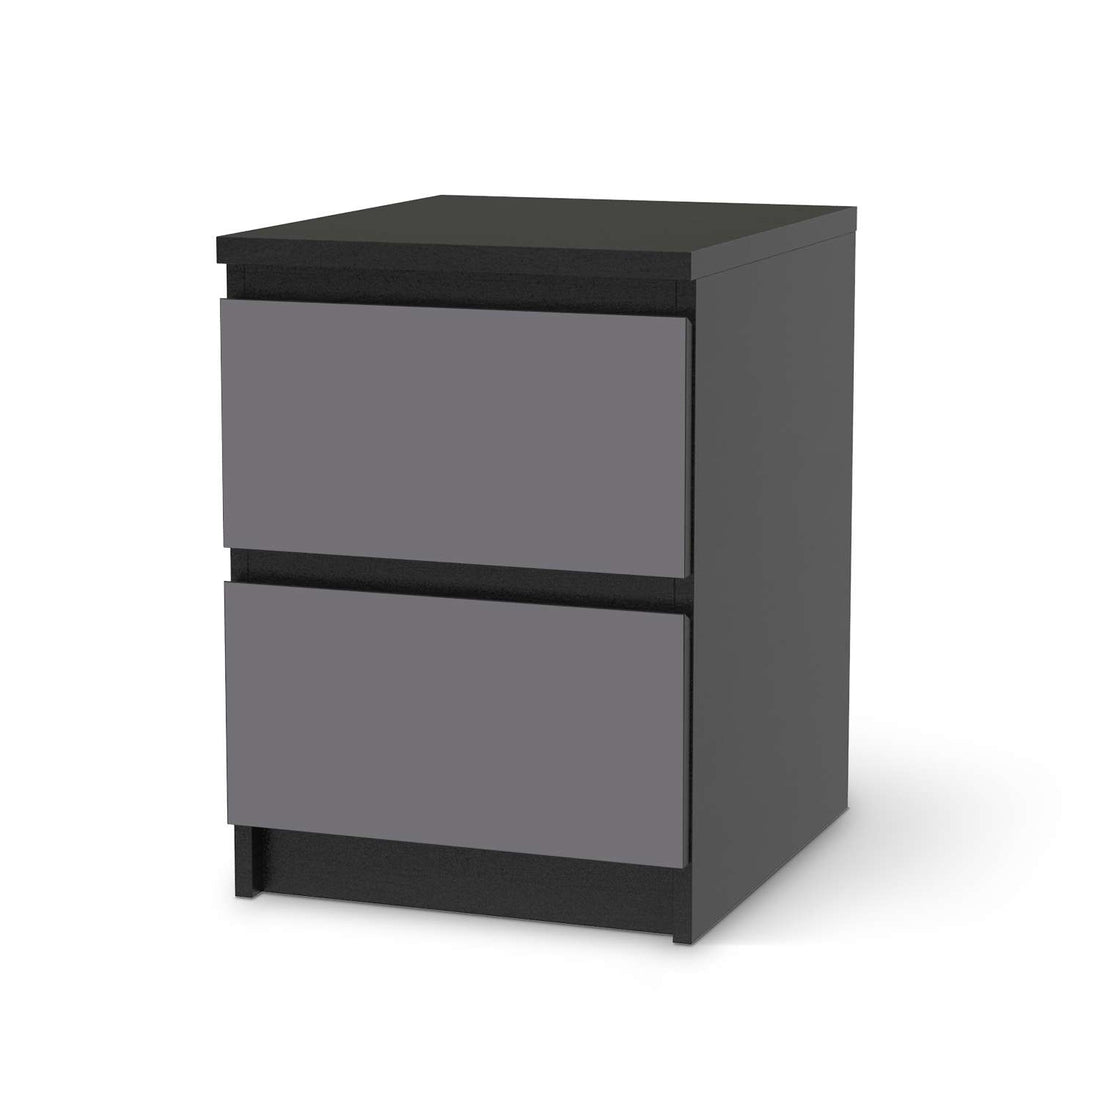 Möbelfolie Grau Light - IKEA Malm Kommode 2 Schubladen - schwarz